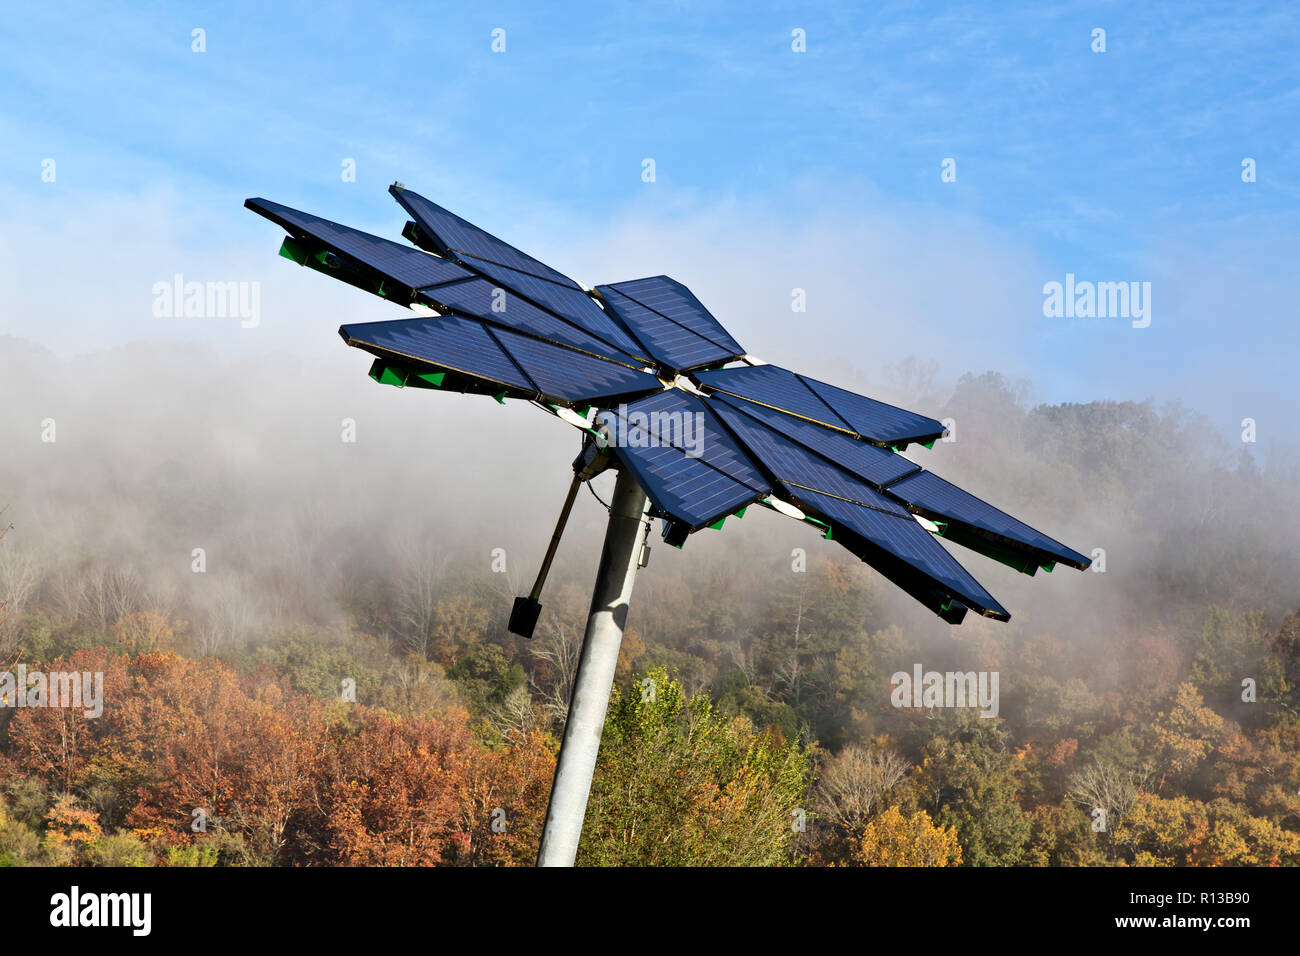 Matriz Solar identificado como "Solar Fotovoltaica Flair", facilita la estación de recarga de vehículos eléctricos, disipando la niebla matutina. Foto de stock